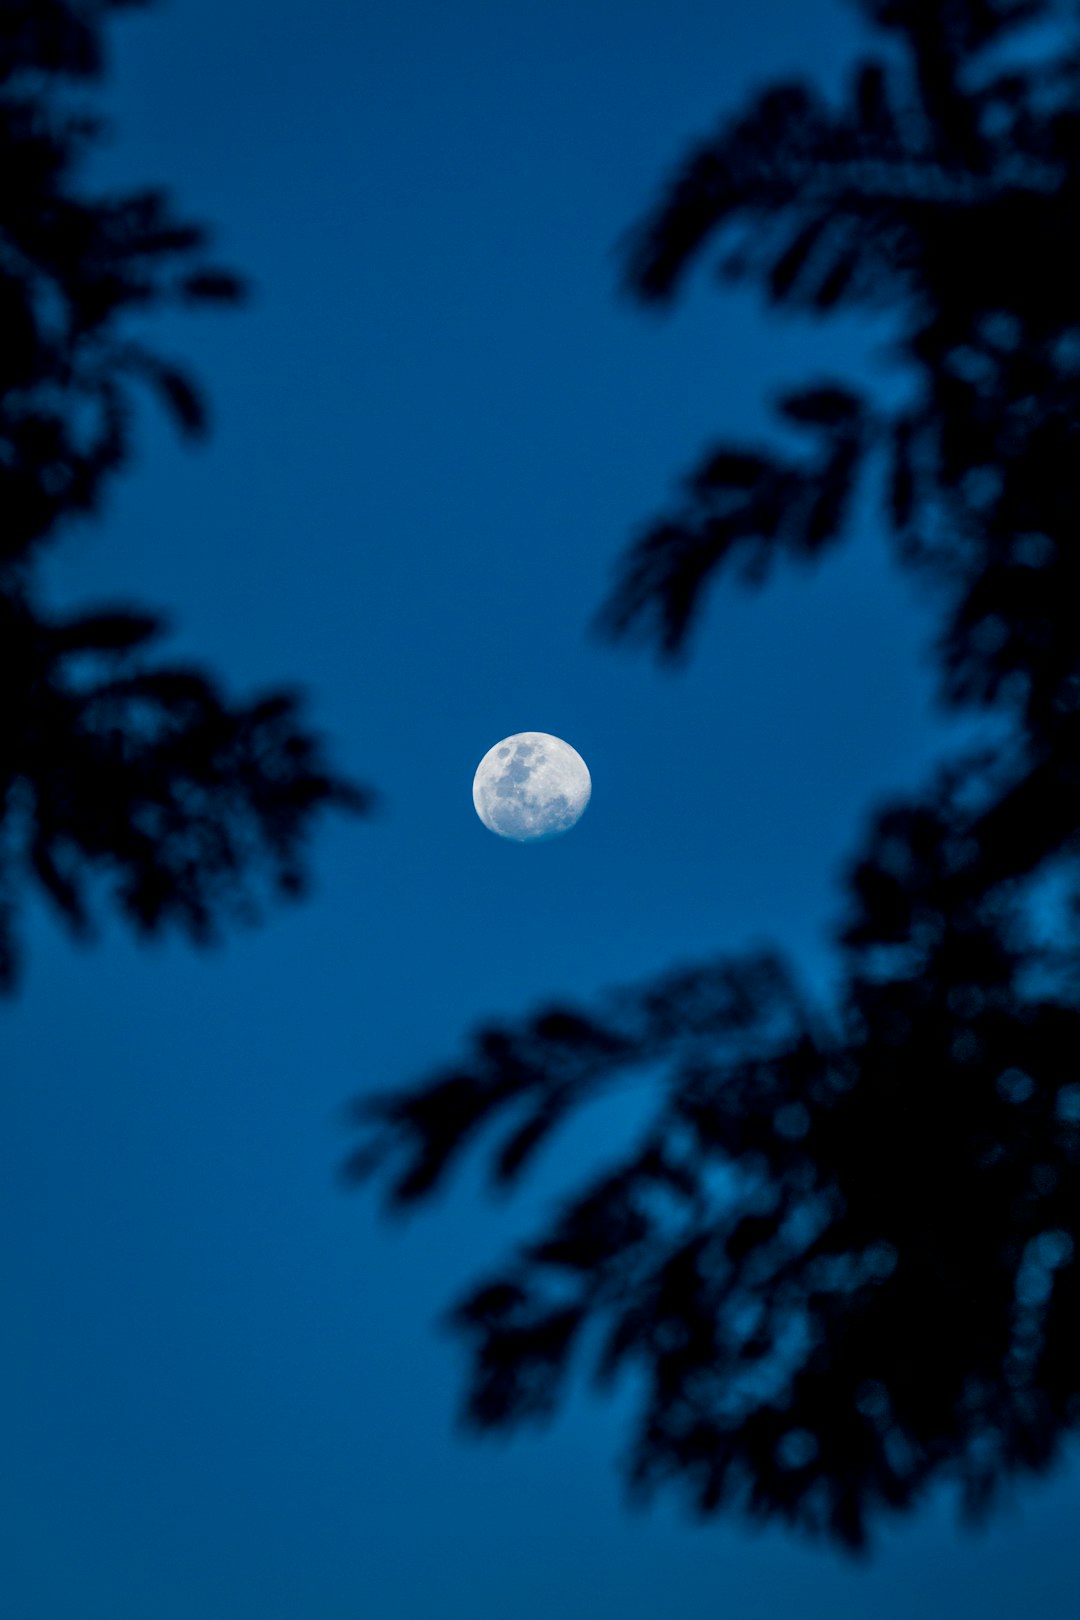 full moon over green trees